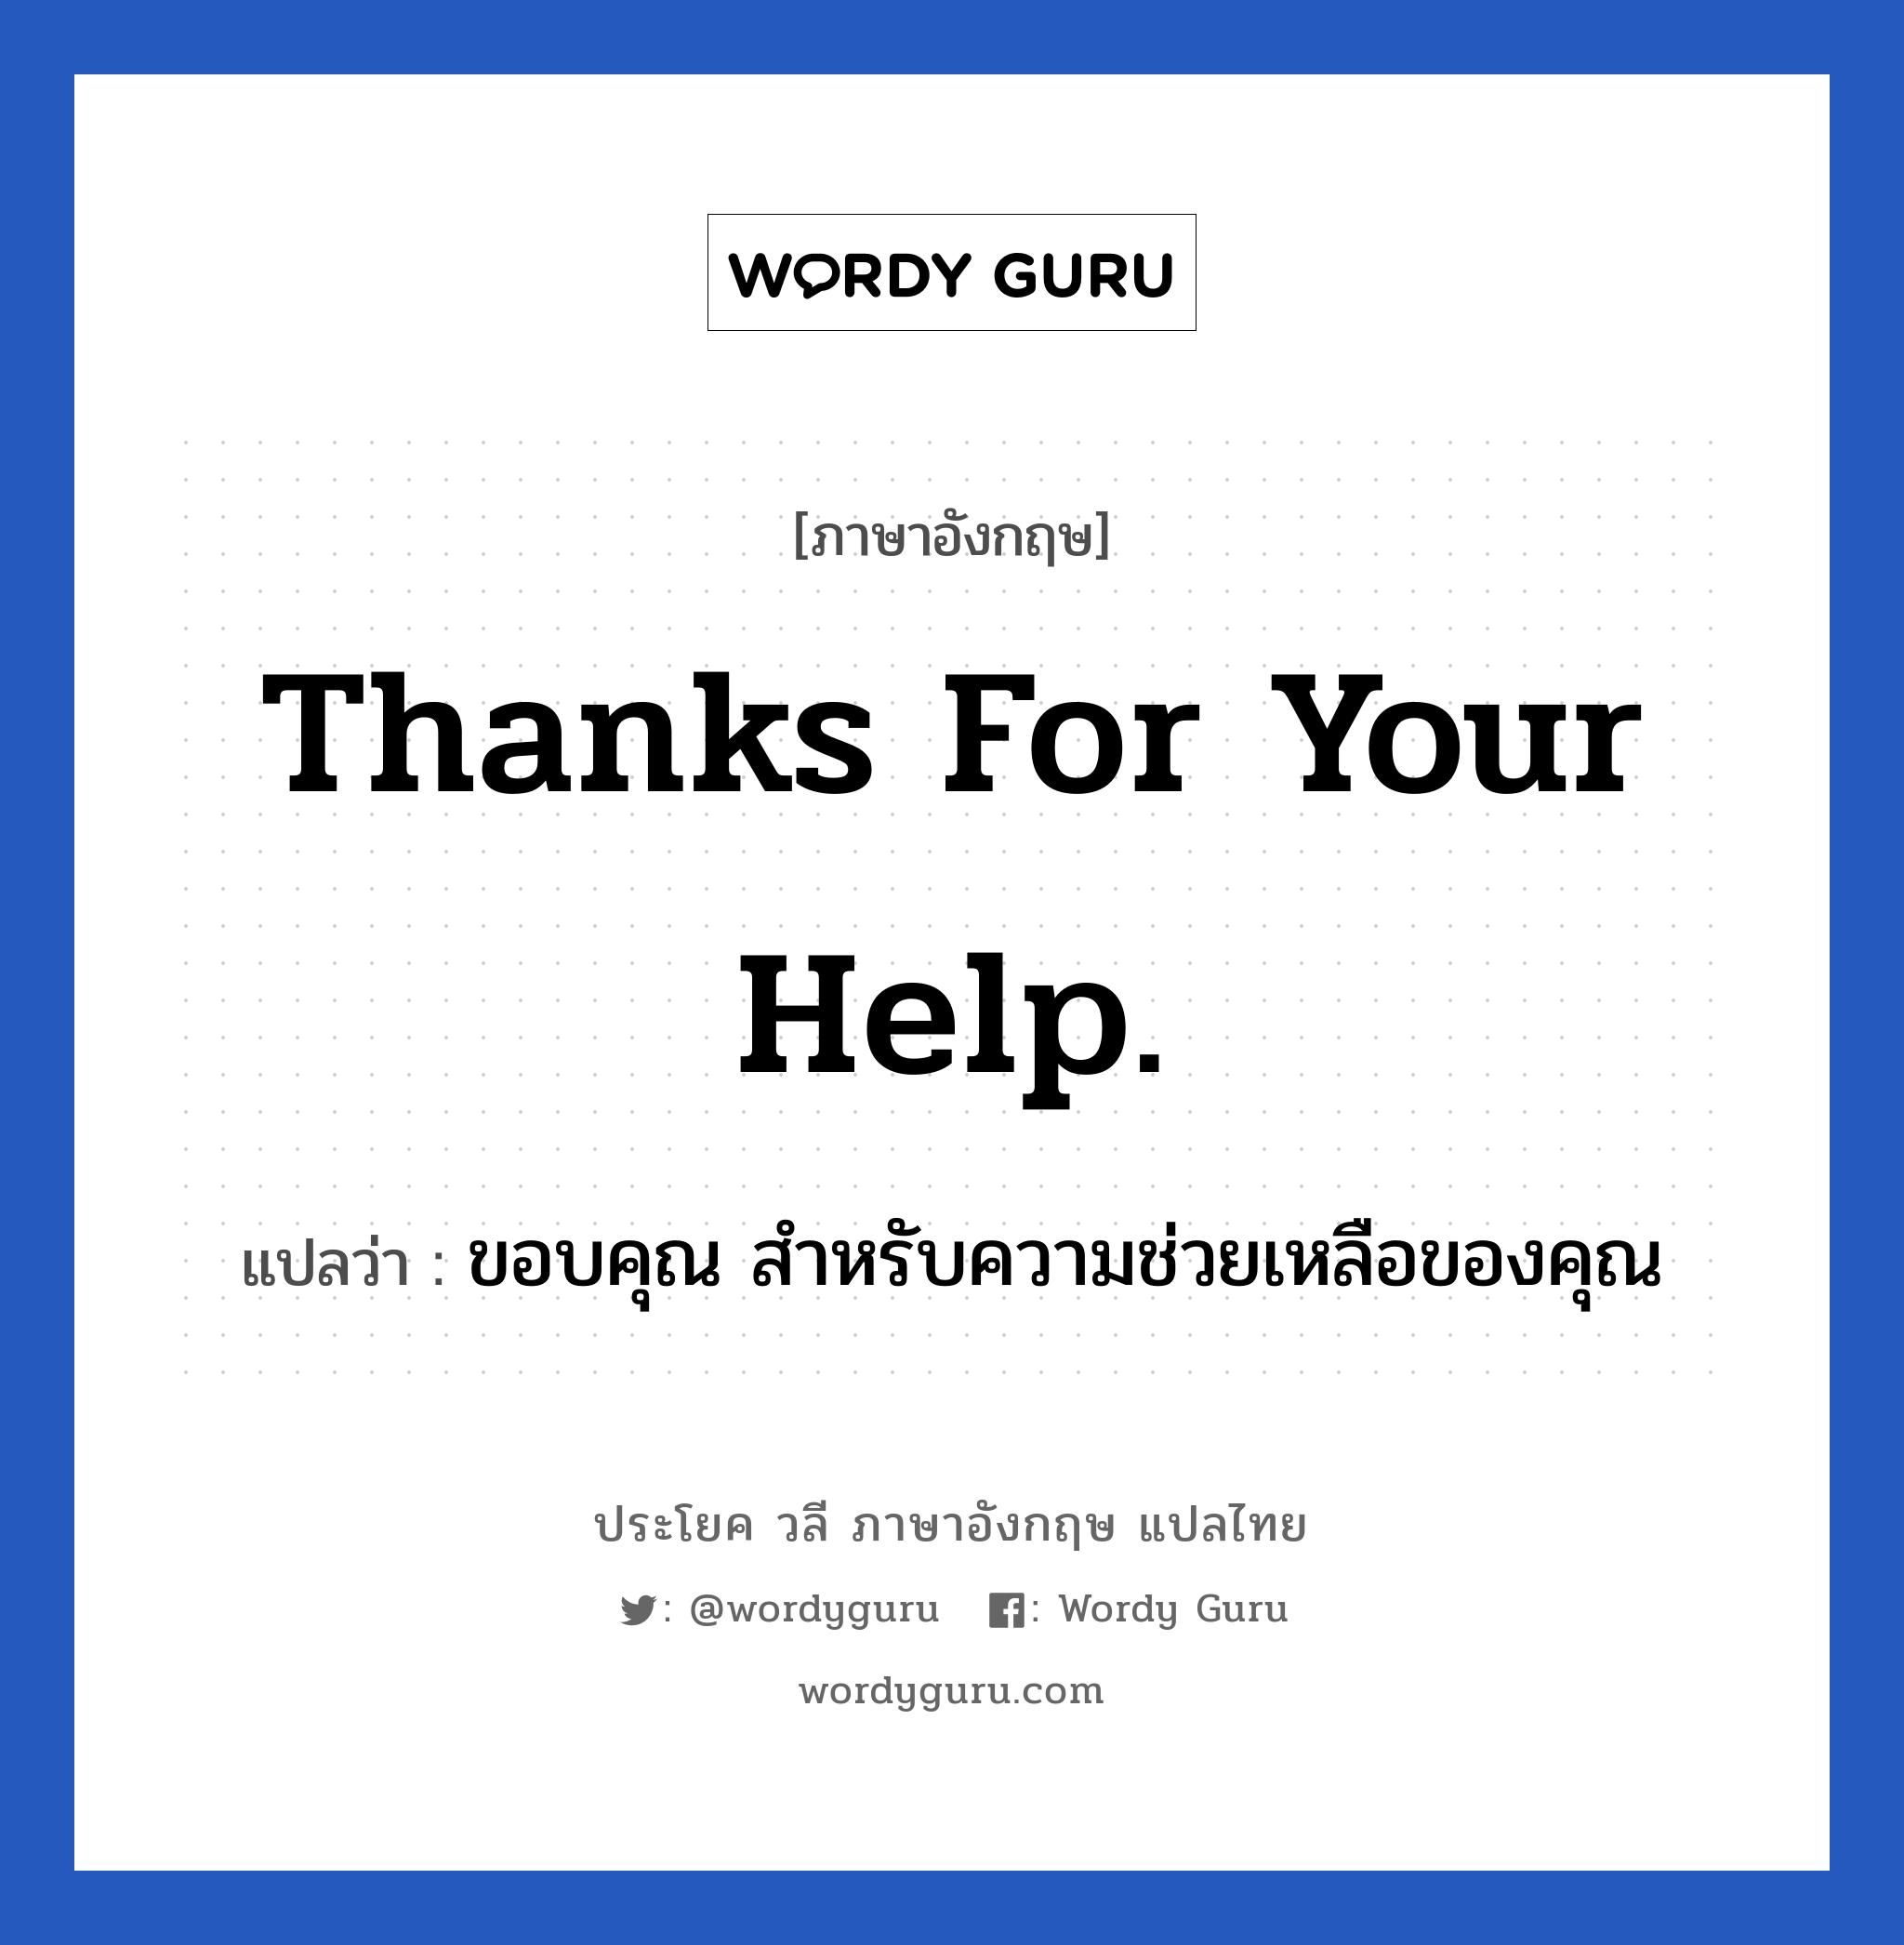 ขอบคุณ สำหรับความช่วยเหลือของคุณ ภาษาอังกฤษ?, วลีภาษาอังกฤษ ขอบคุณ สำหรับความช่วยเหลือของคุณ แปลว่า Thanks for your help.